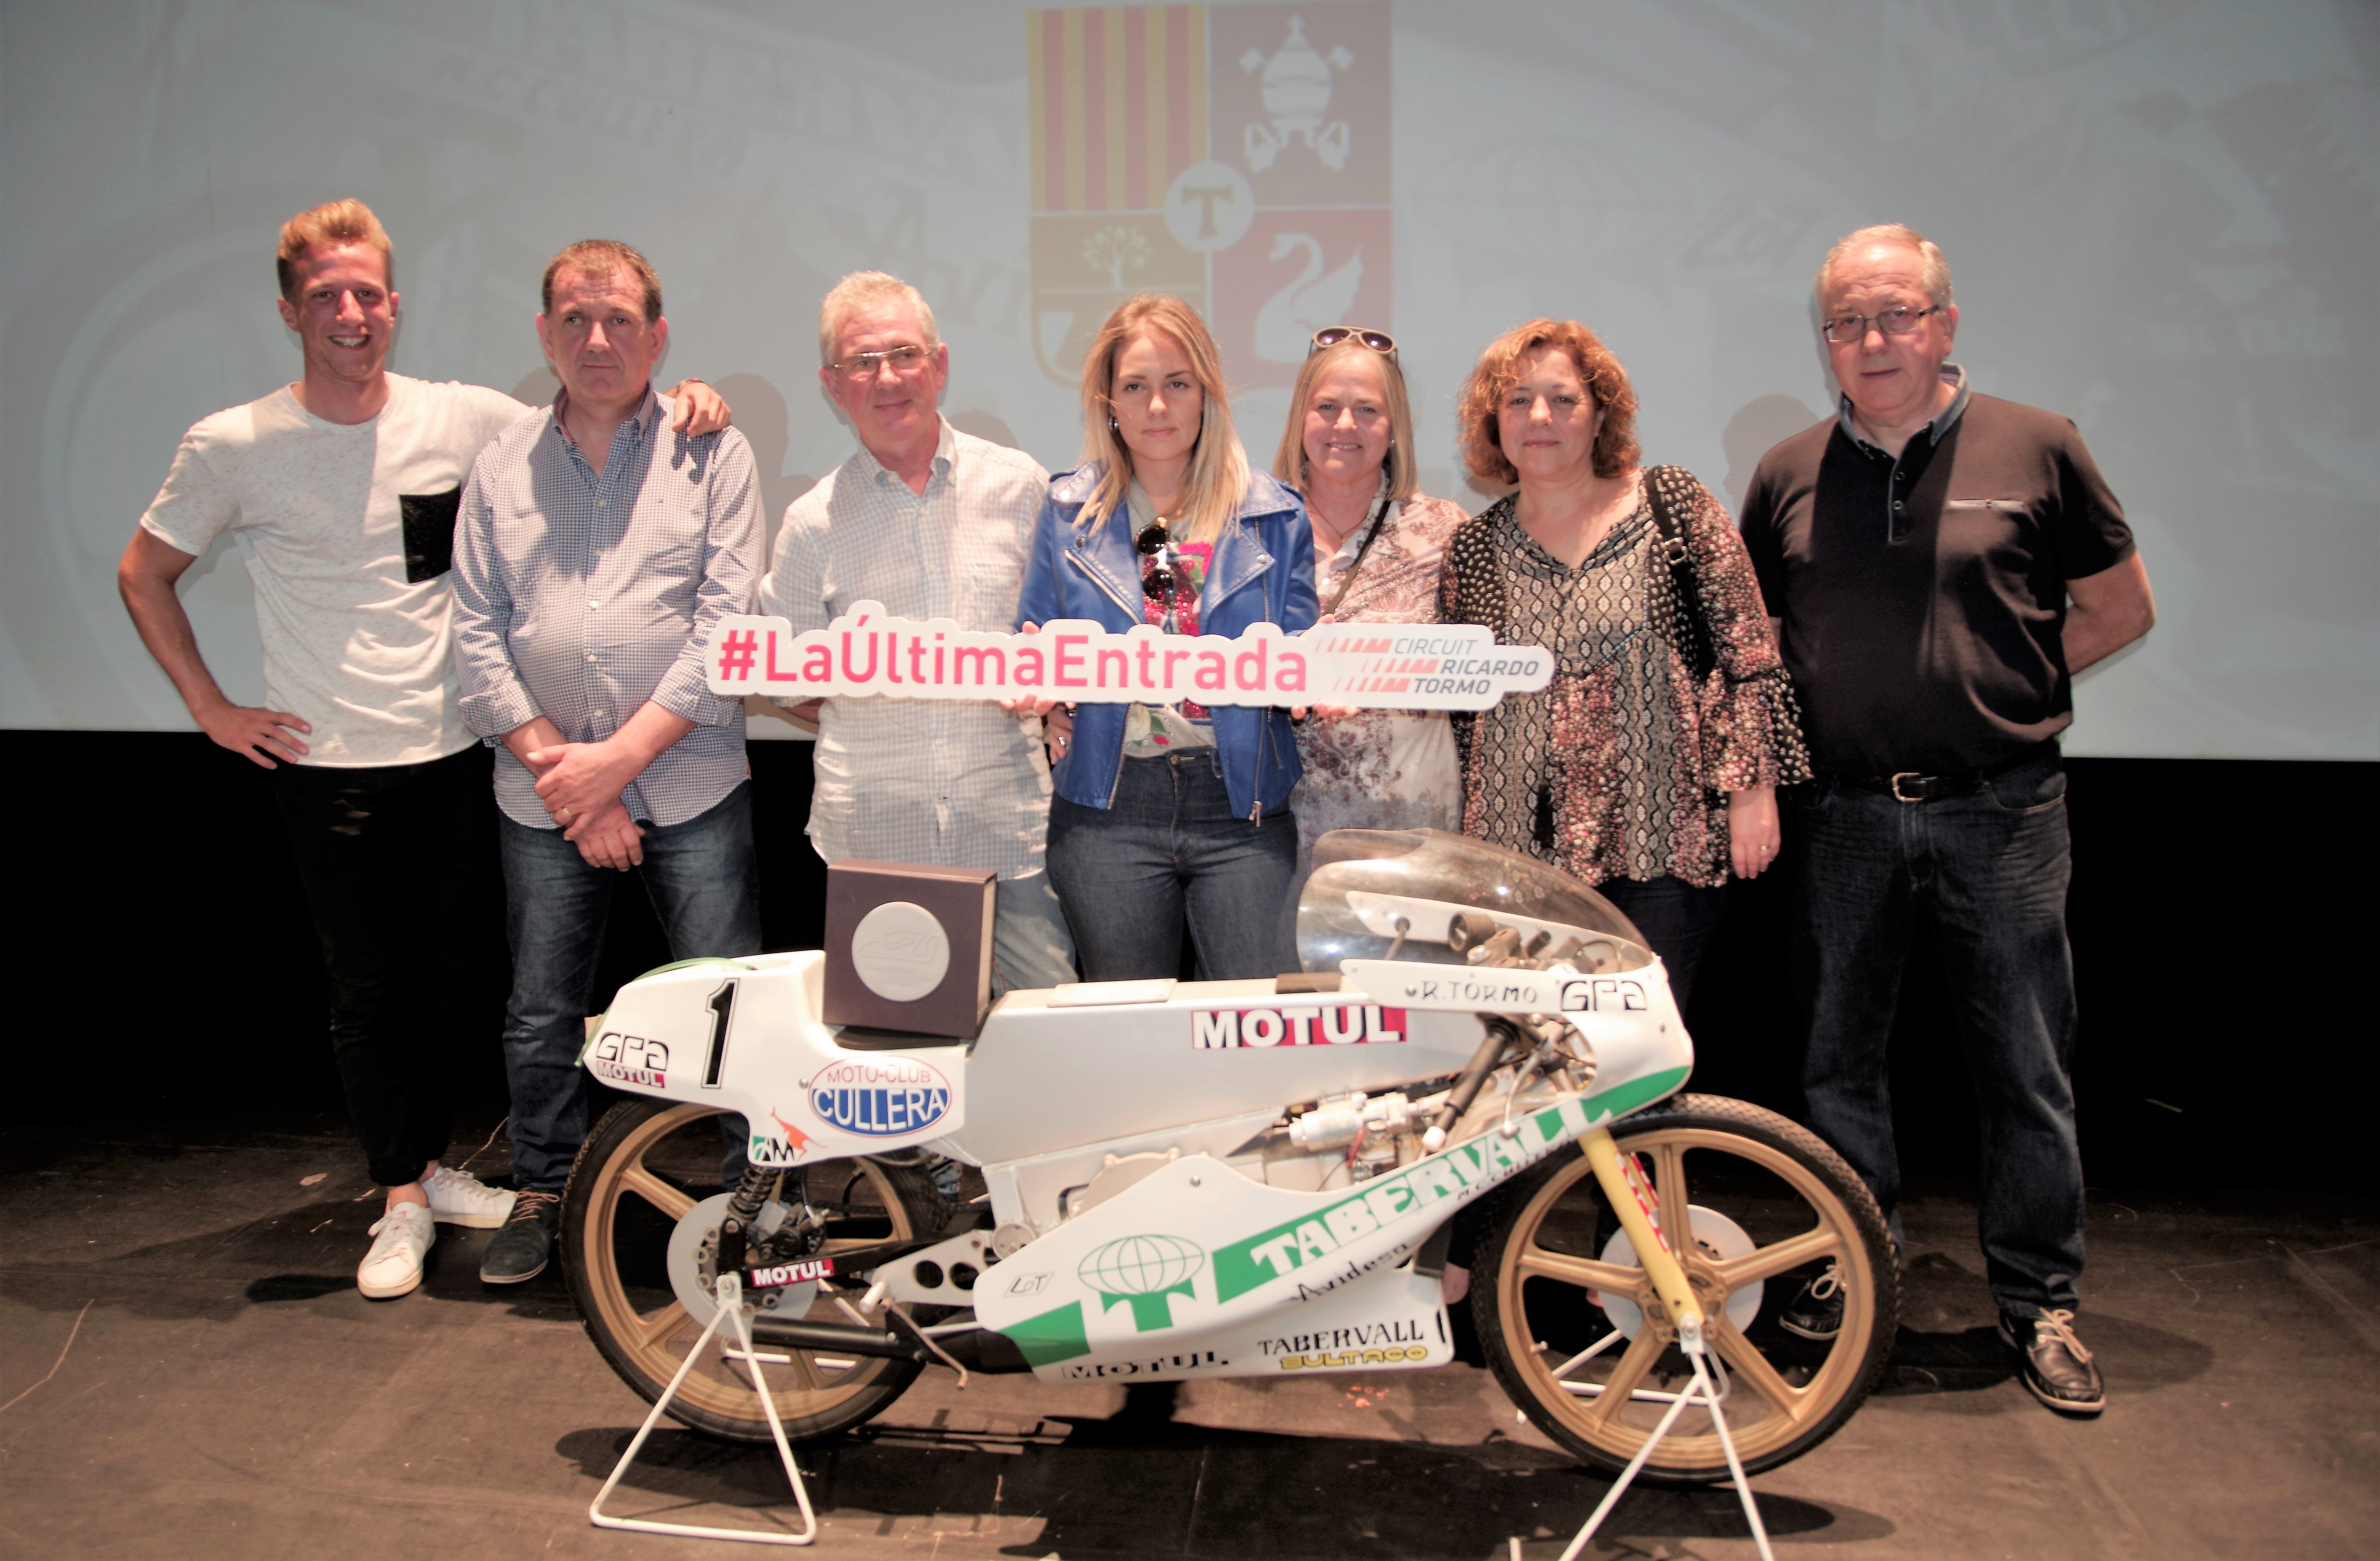 Canals presenta el vídeo del Gran Premi Motul de la Comunitat Valenciana 2017